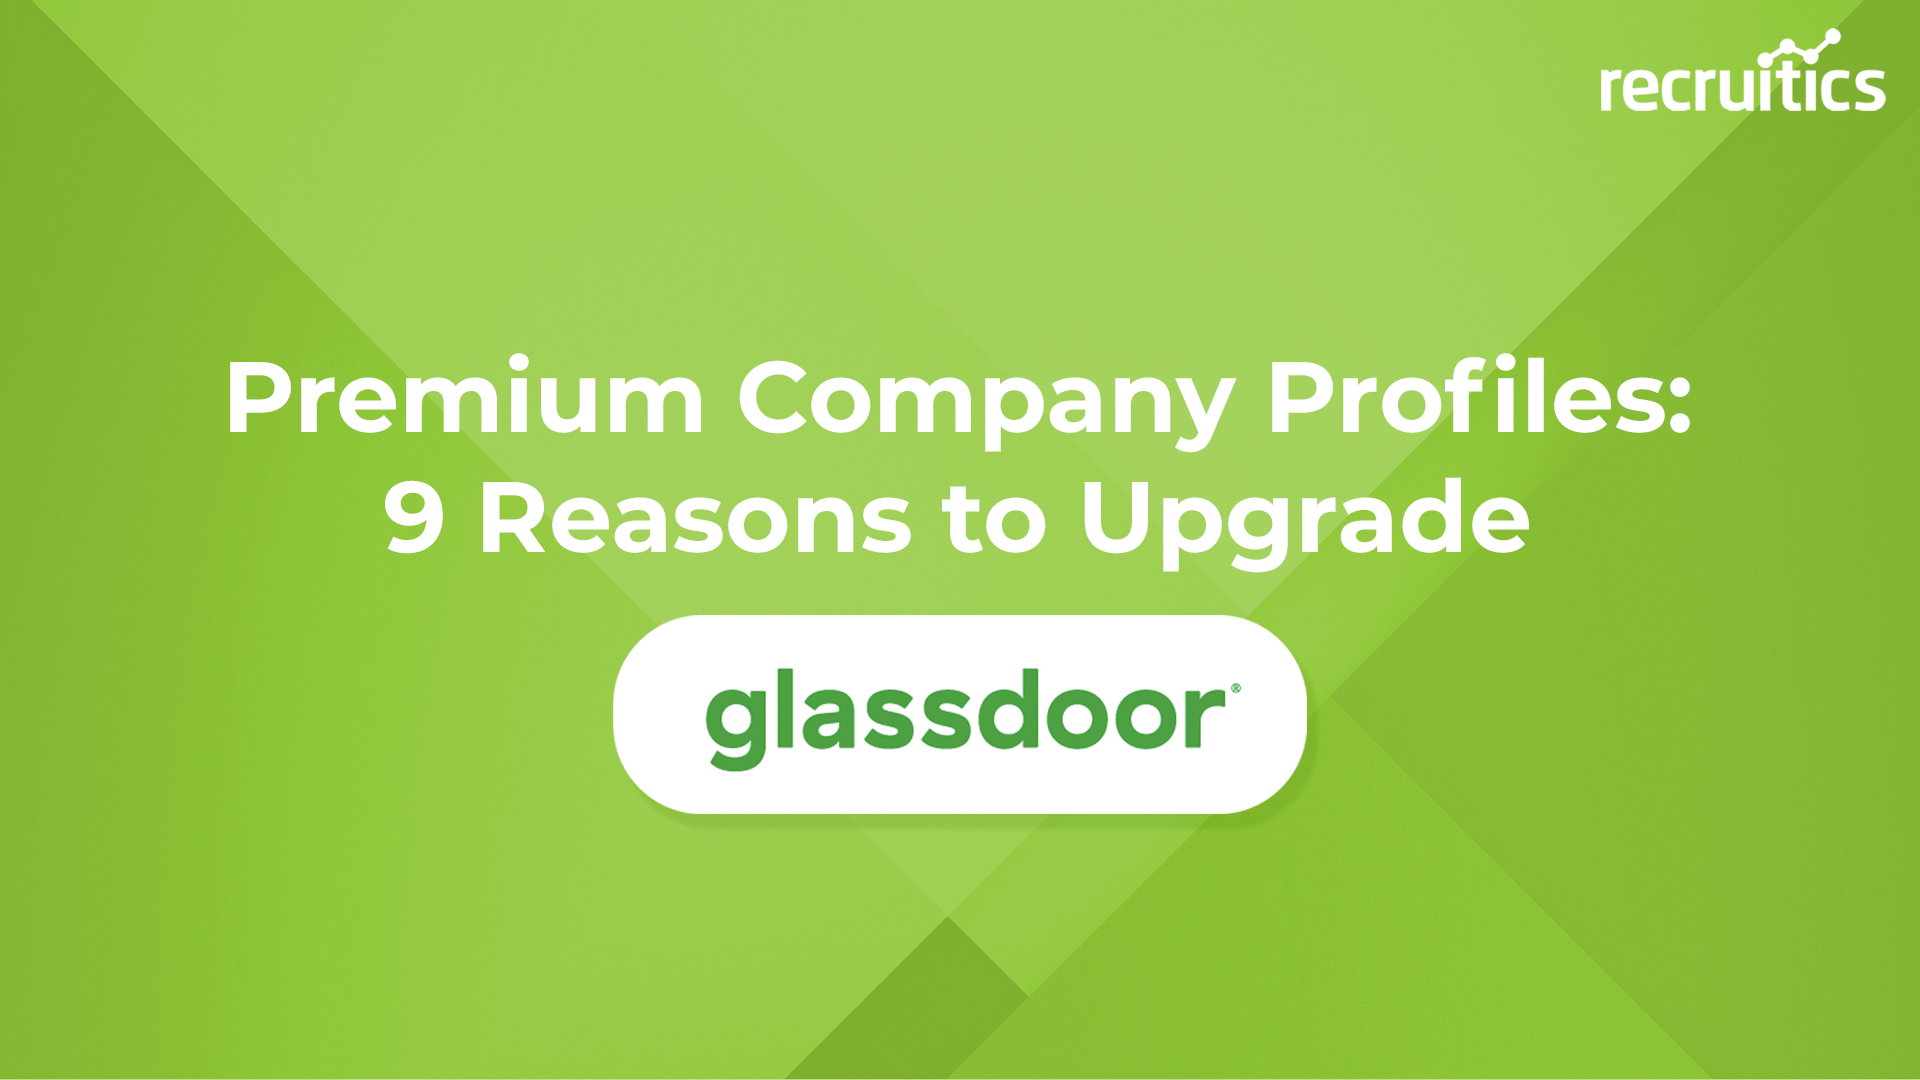 Glassdoor’s Premium Company Profiles 9 Reasons to Upgrade